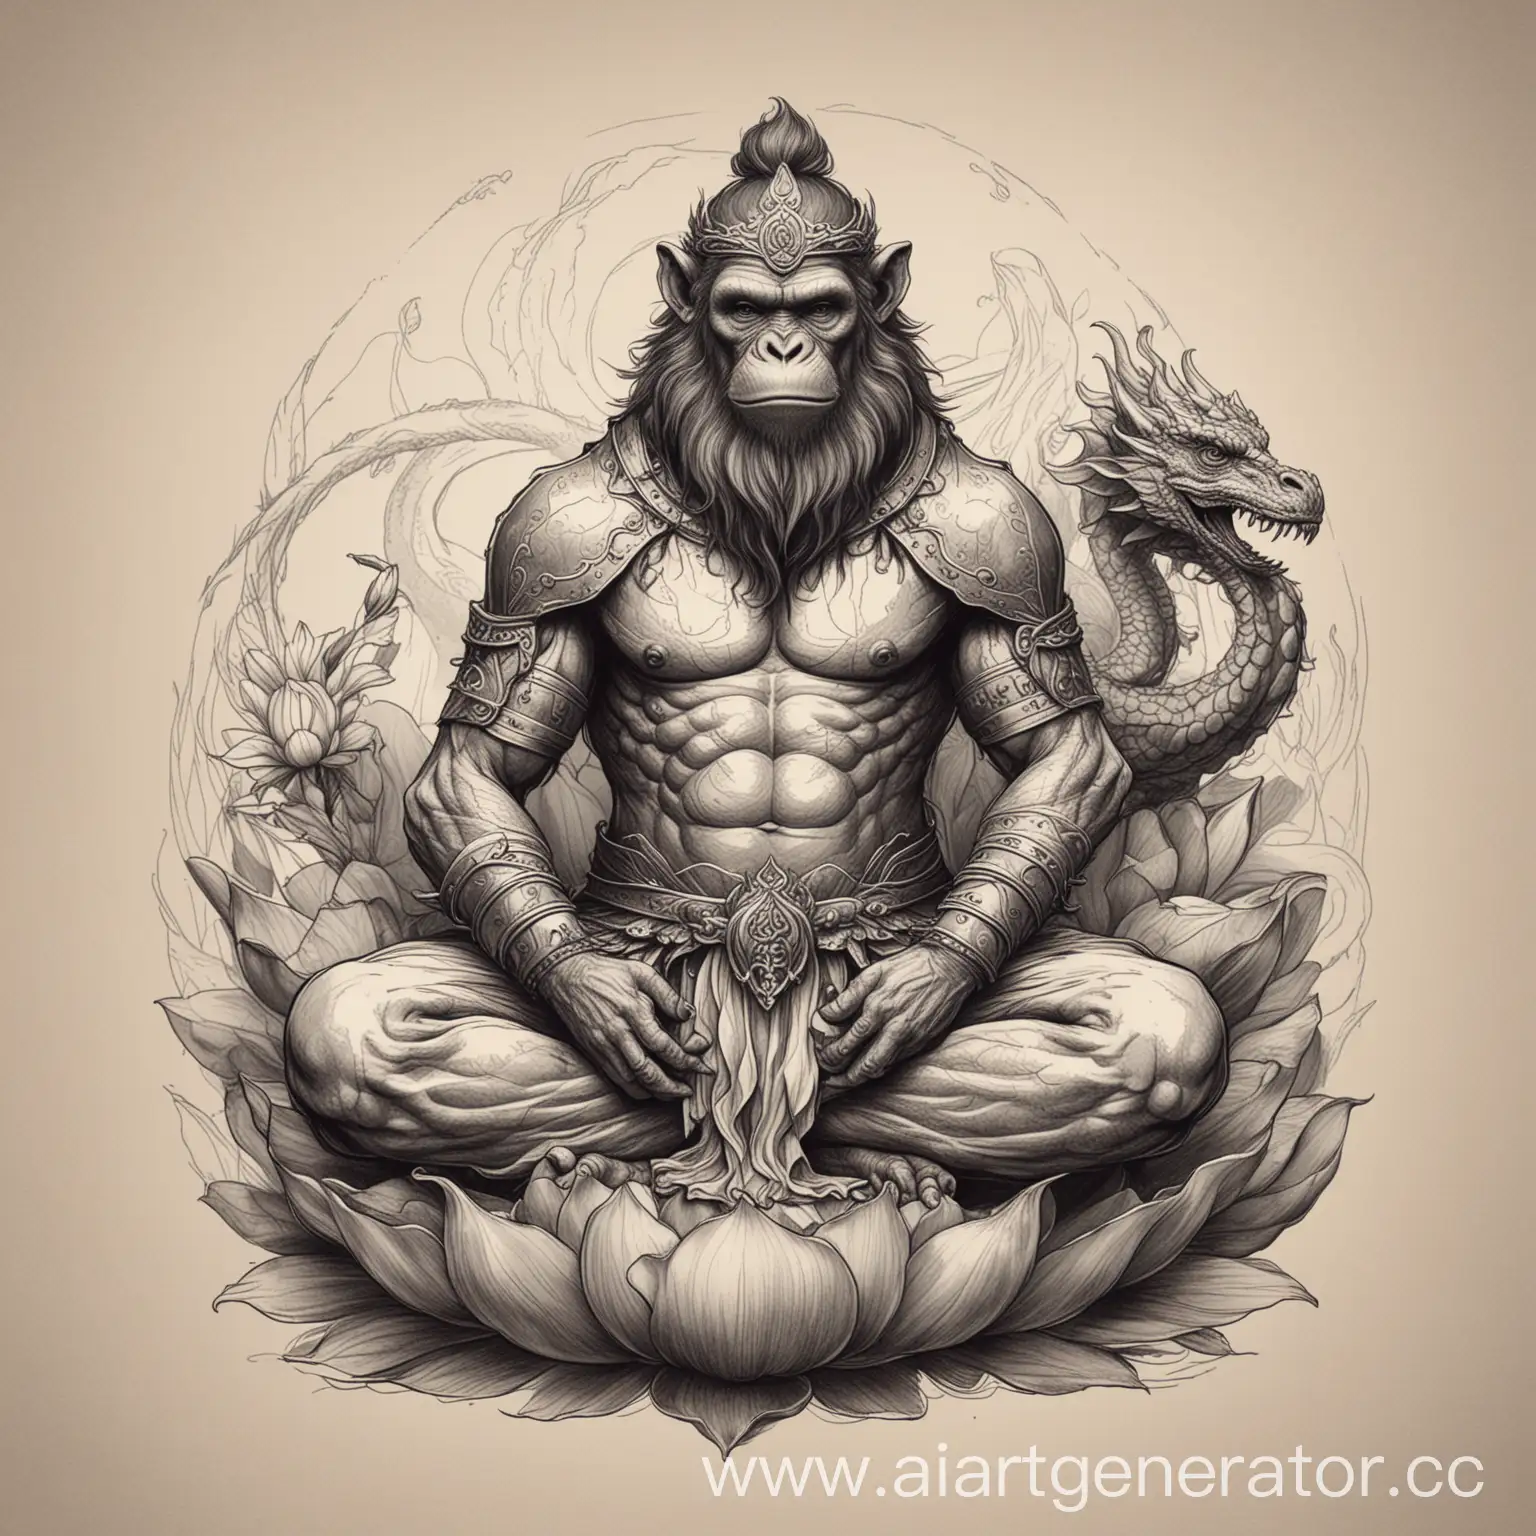 Черно белый эскиз татуировки с воинственным  реалистичным королем обезьян в позе лотоса  обвитый драконом в минималистичном стиле